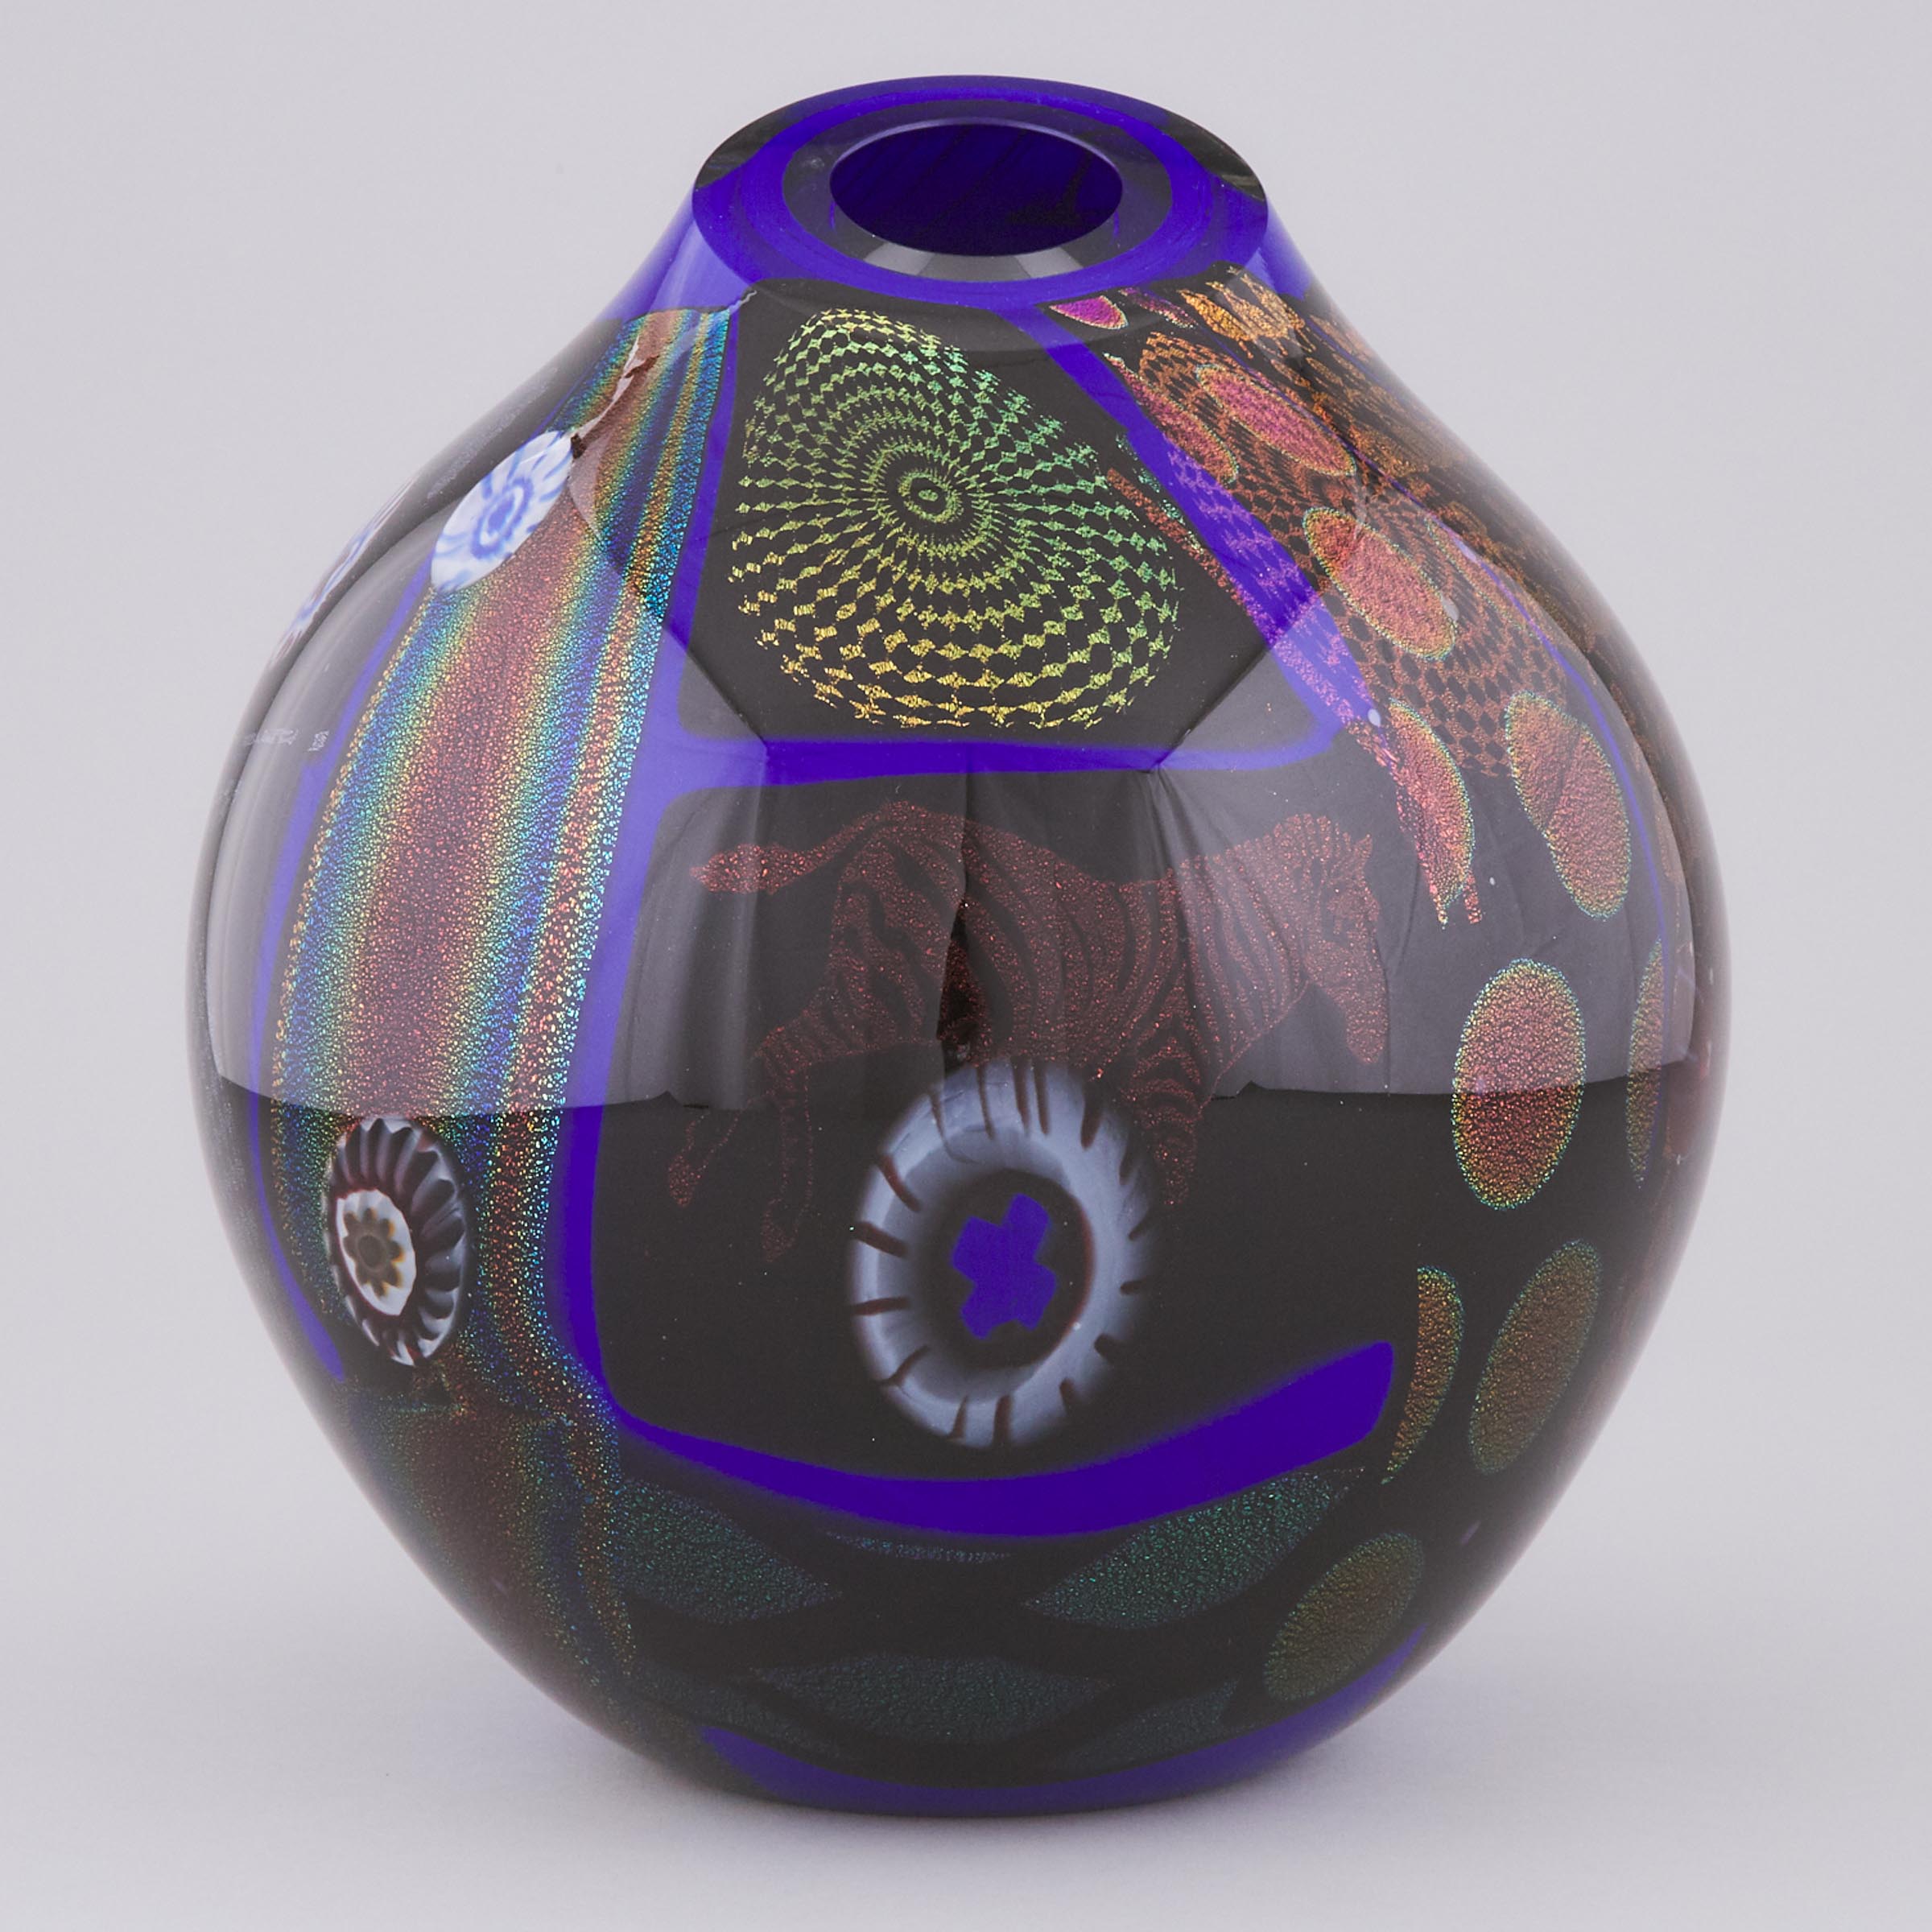 Peter Vanderlaan (American, b.1950), Internally Decorated Glass Vase, 2002